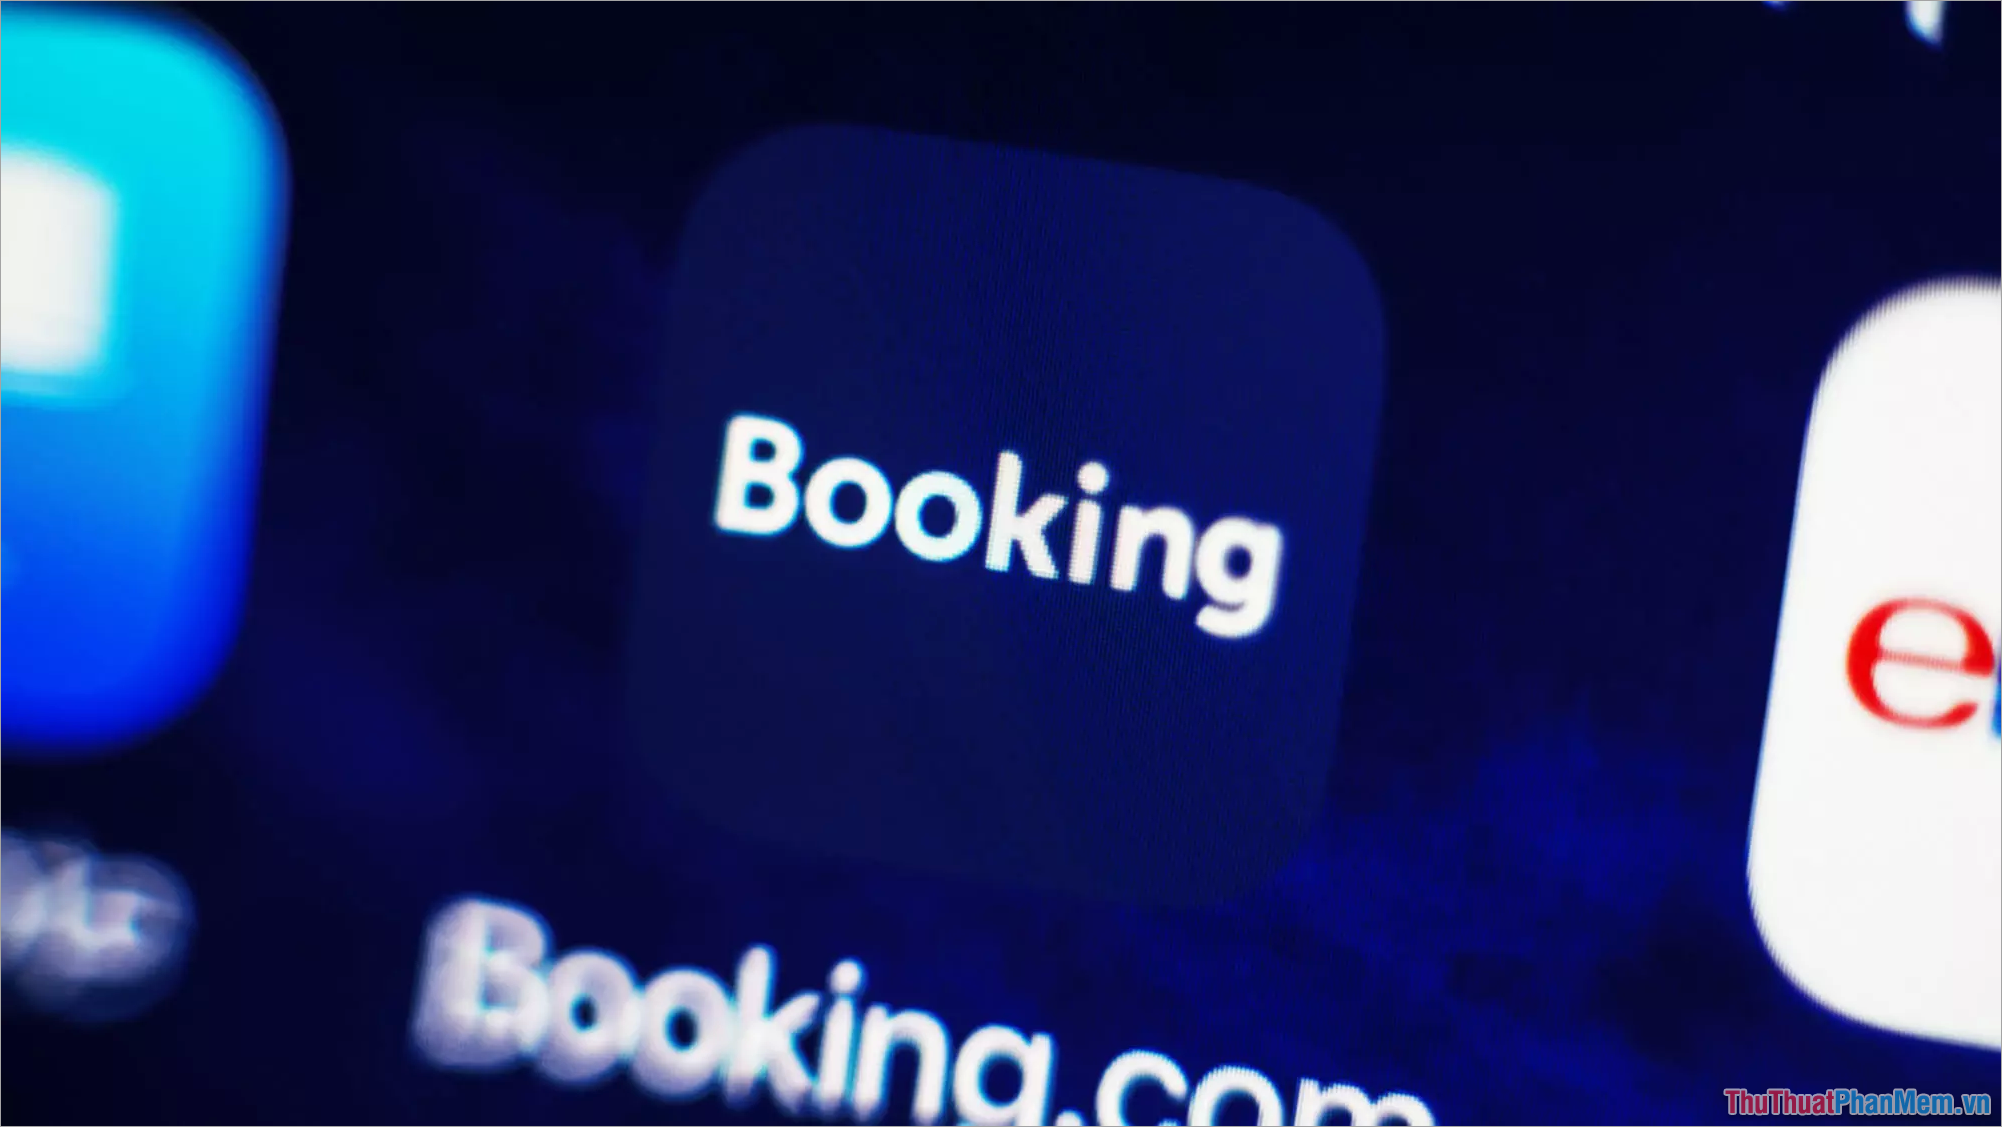 Booking – App đặt phòng khách sạn trên toàn thế giới